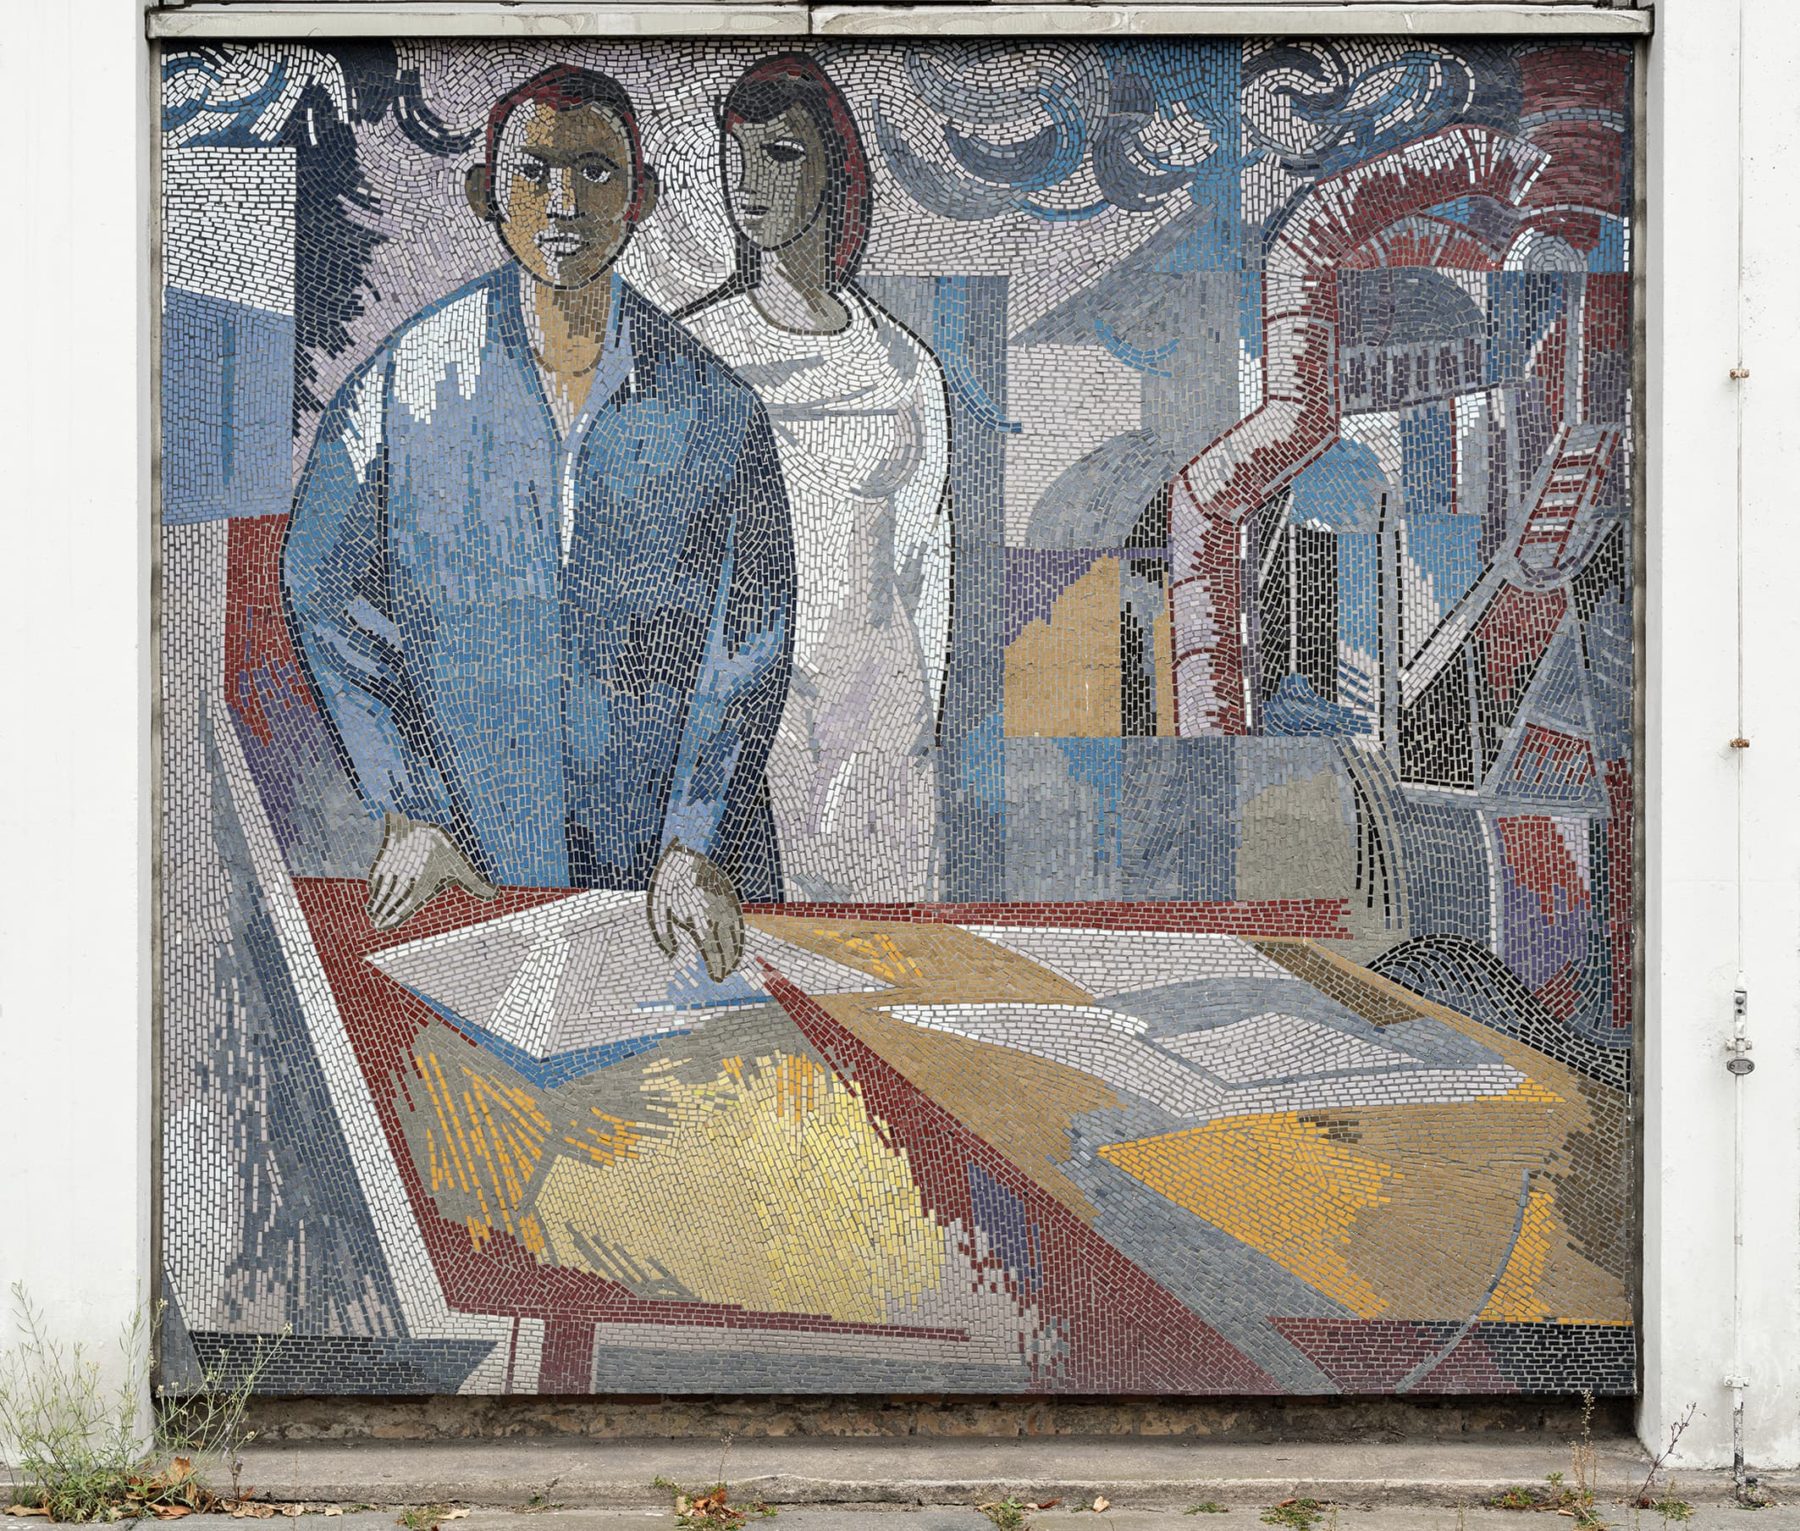 Mosaikbild zweier Menschen in Arbeitskleidung, dahinter Industrieanlagen.